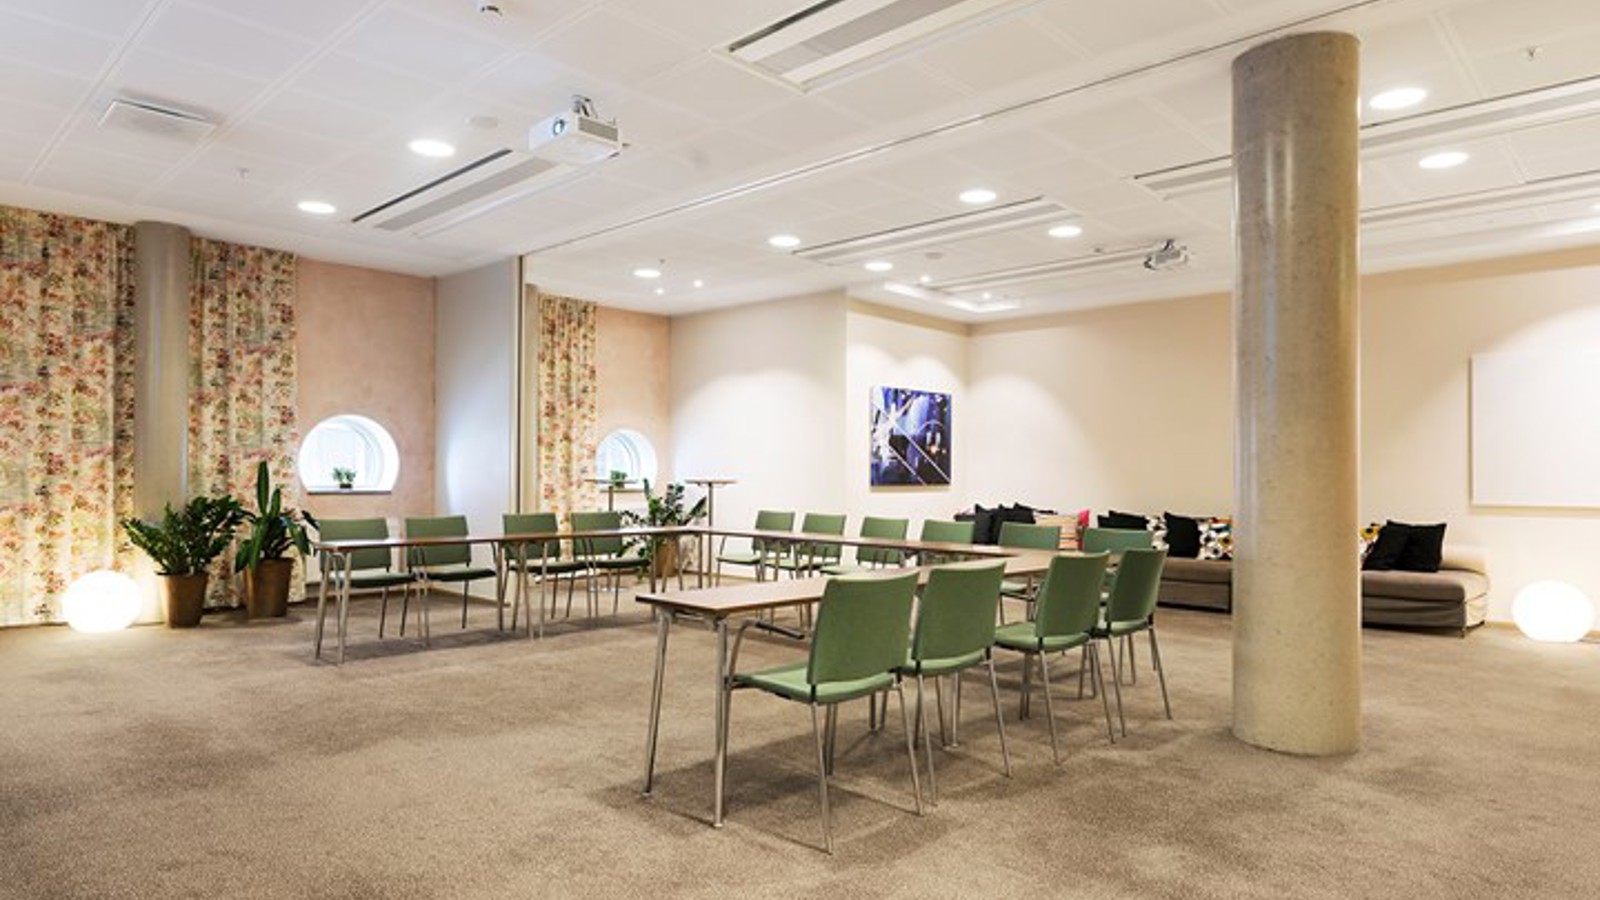 Konferensrum med u-sittning, ljusbrunt golv, gröna stolar och mönstrade draperier